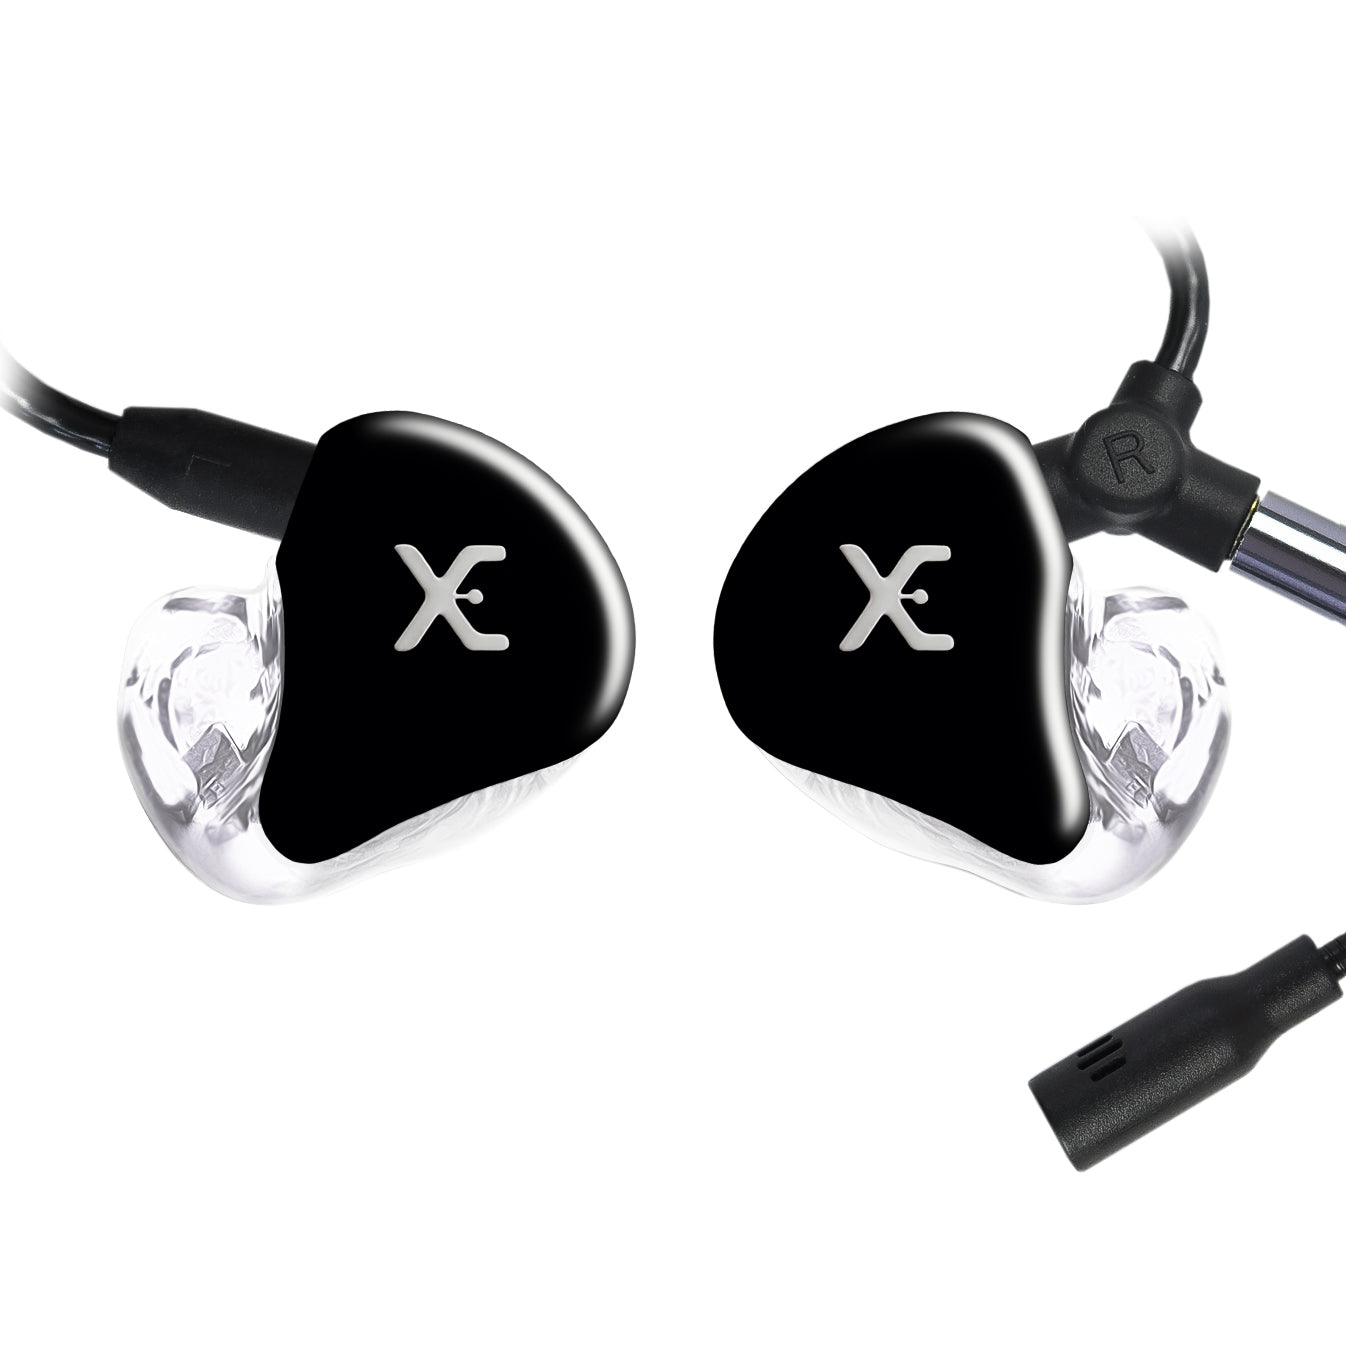 Fone In Ear Xtreme Hybrid Gamer